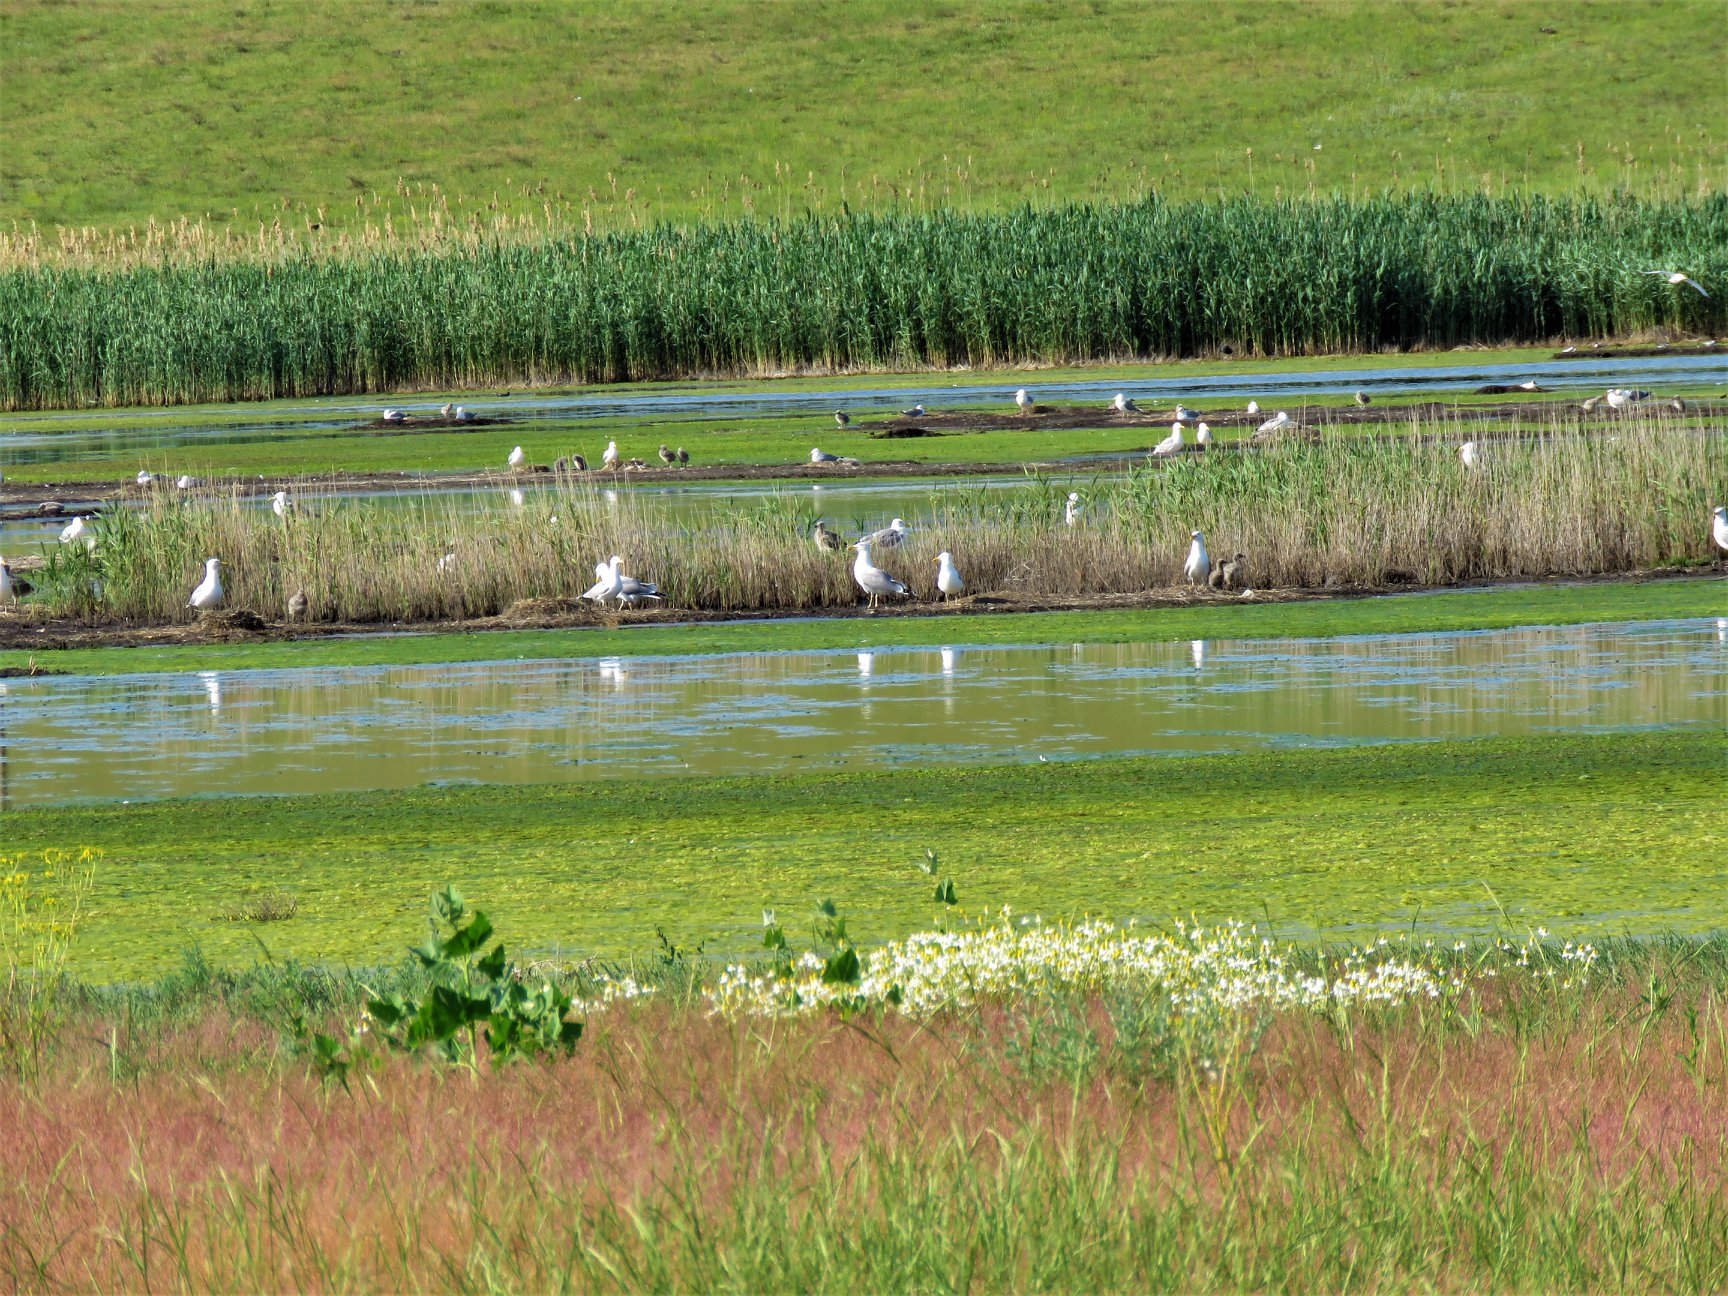 Speriate de vizitatori, păsările flamingo din vecinătatea Lacului Sărături Murighiol au plecat